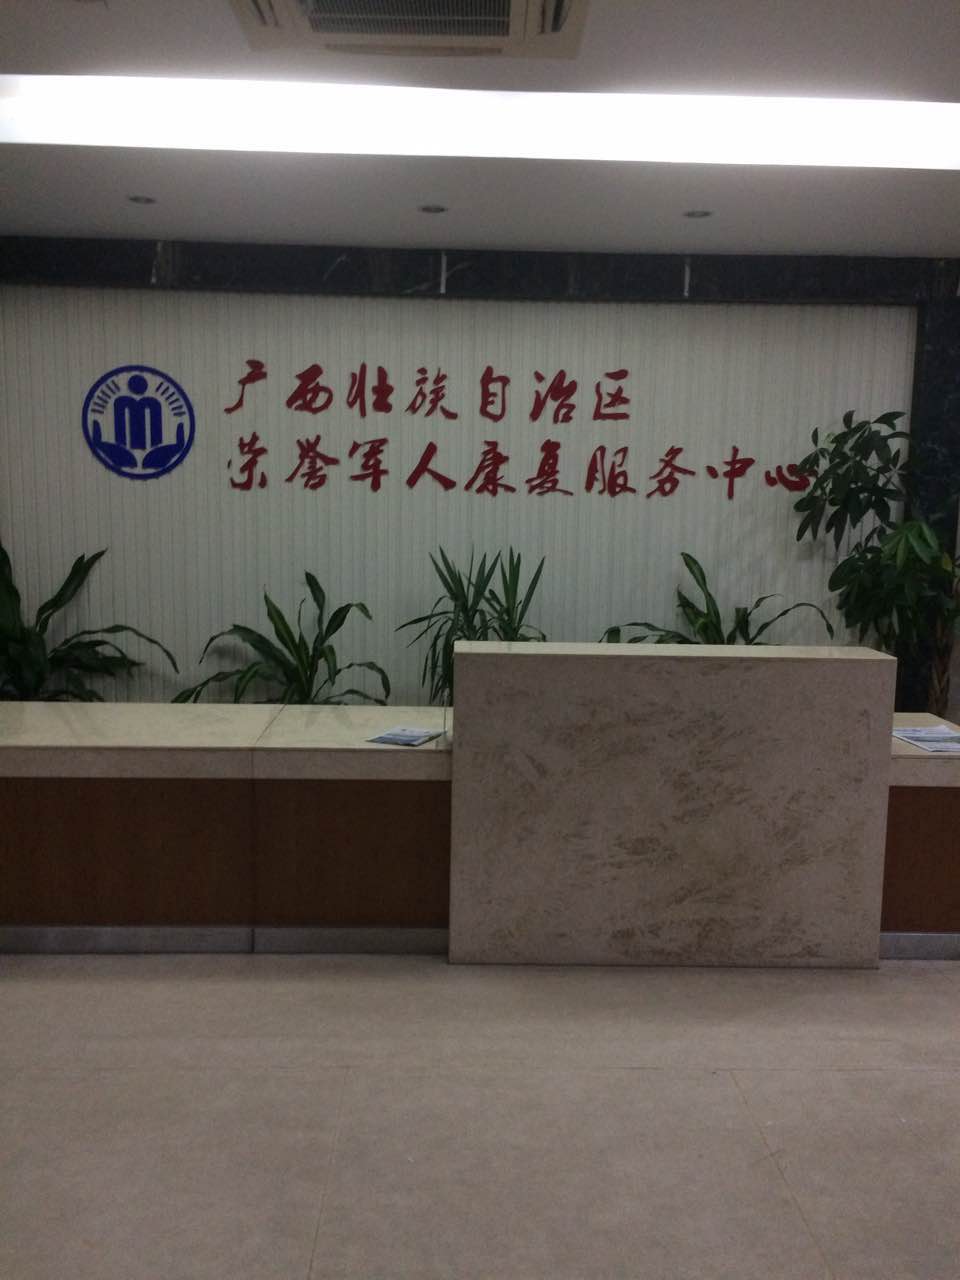 广西壮族自治区荣誉军人康复服务中心